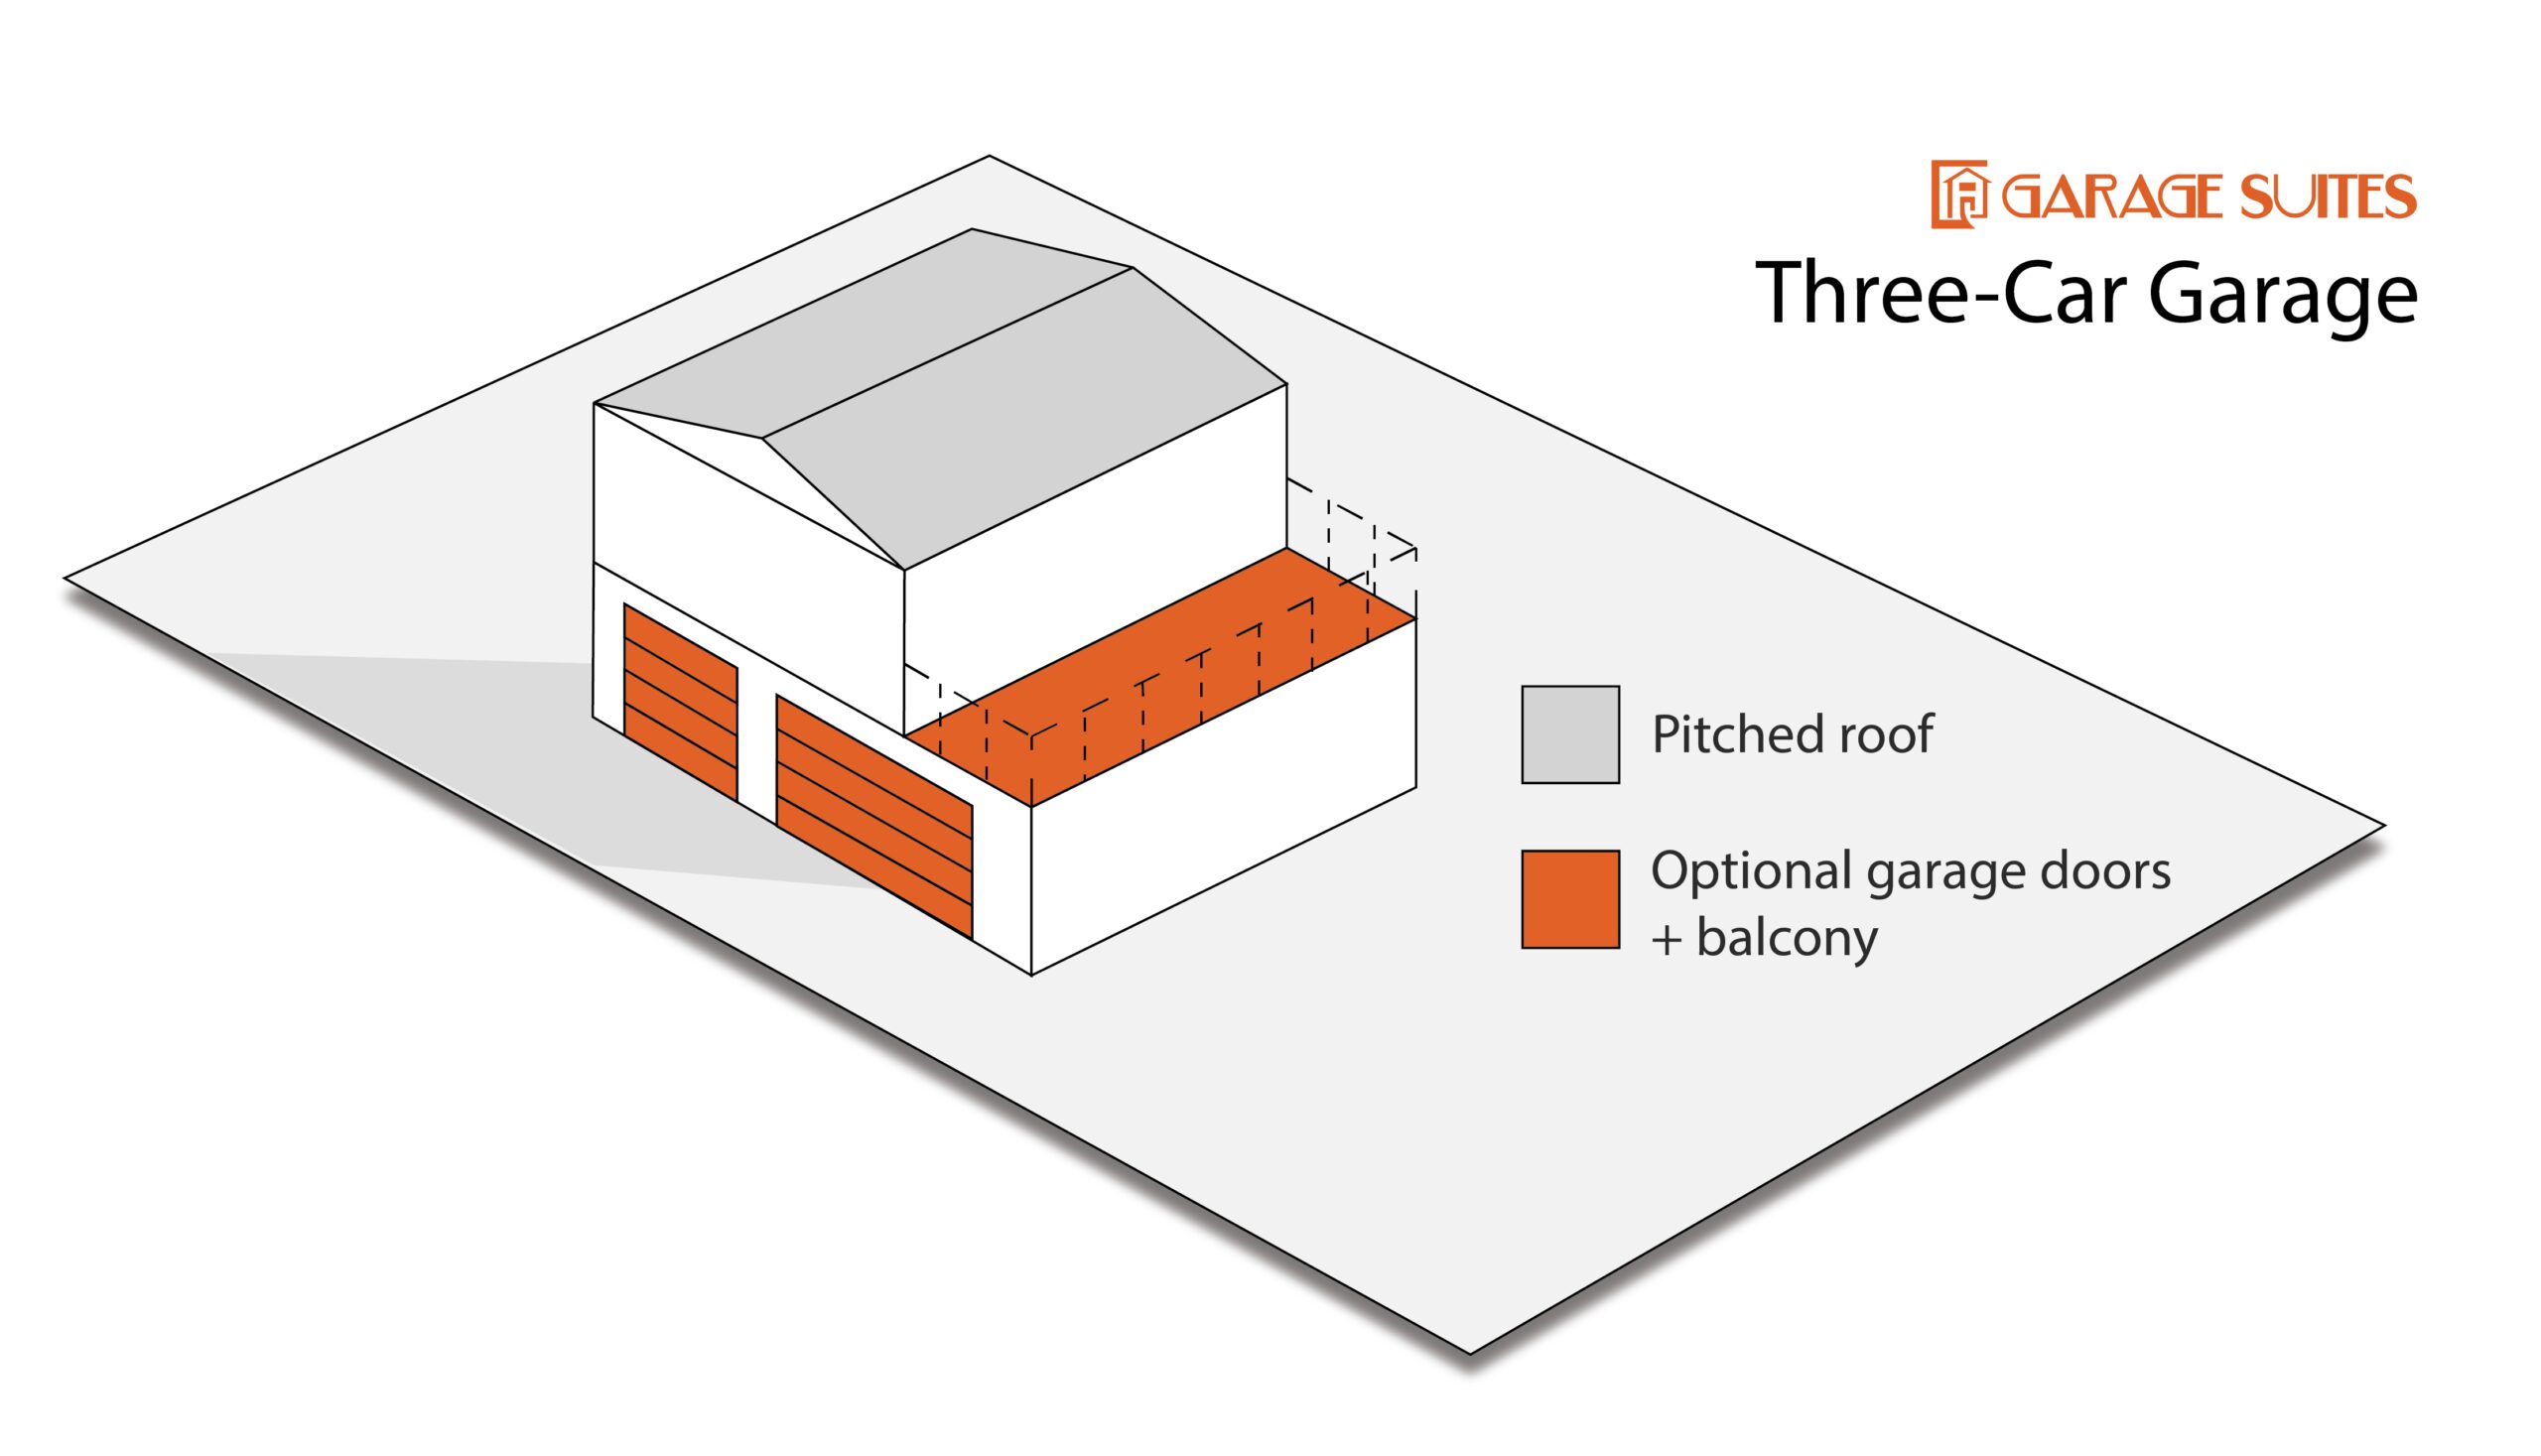 Garage Suite Configuration - Three-Car Garage